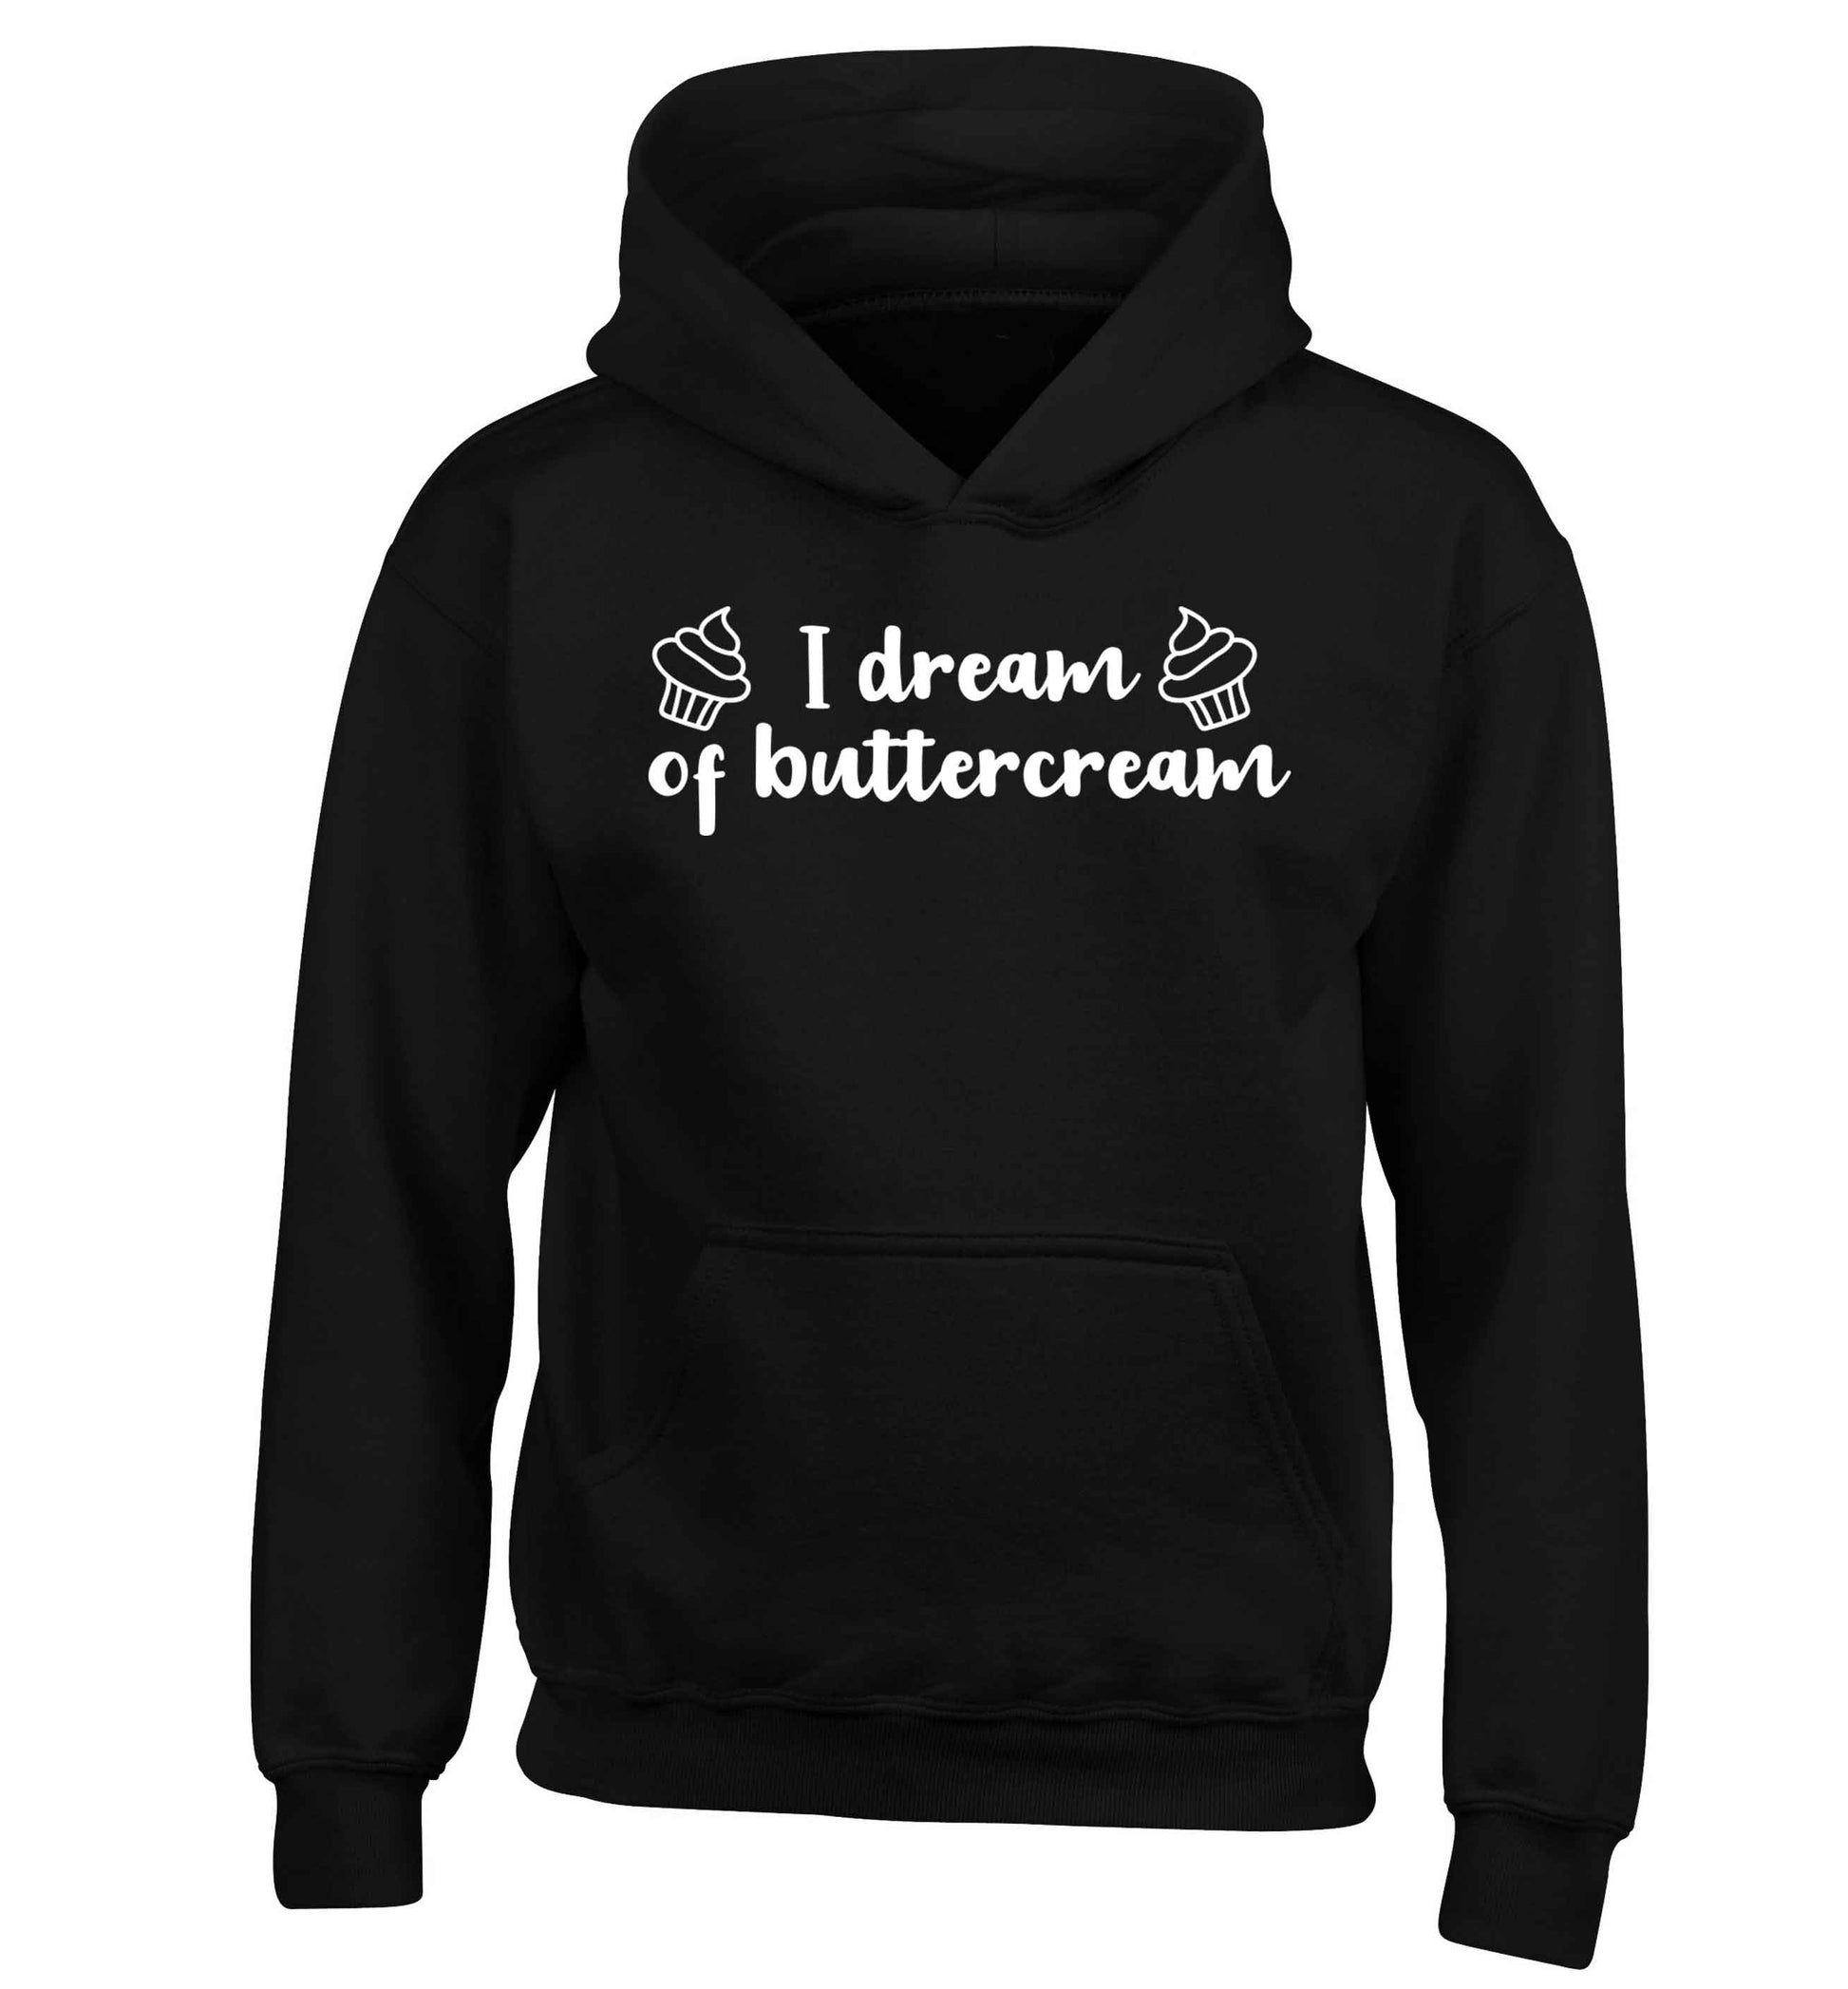 I dream of buttercream children's black hoodie 12-13 Years